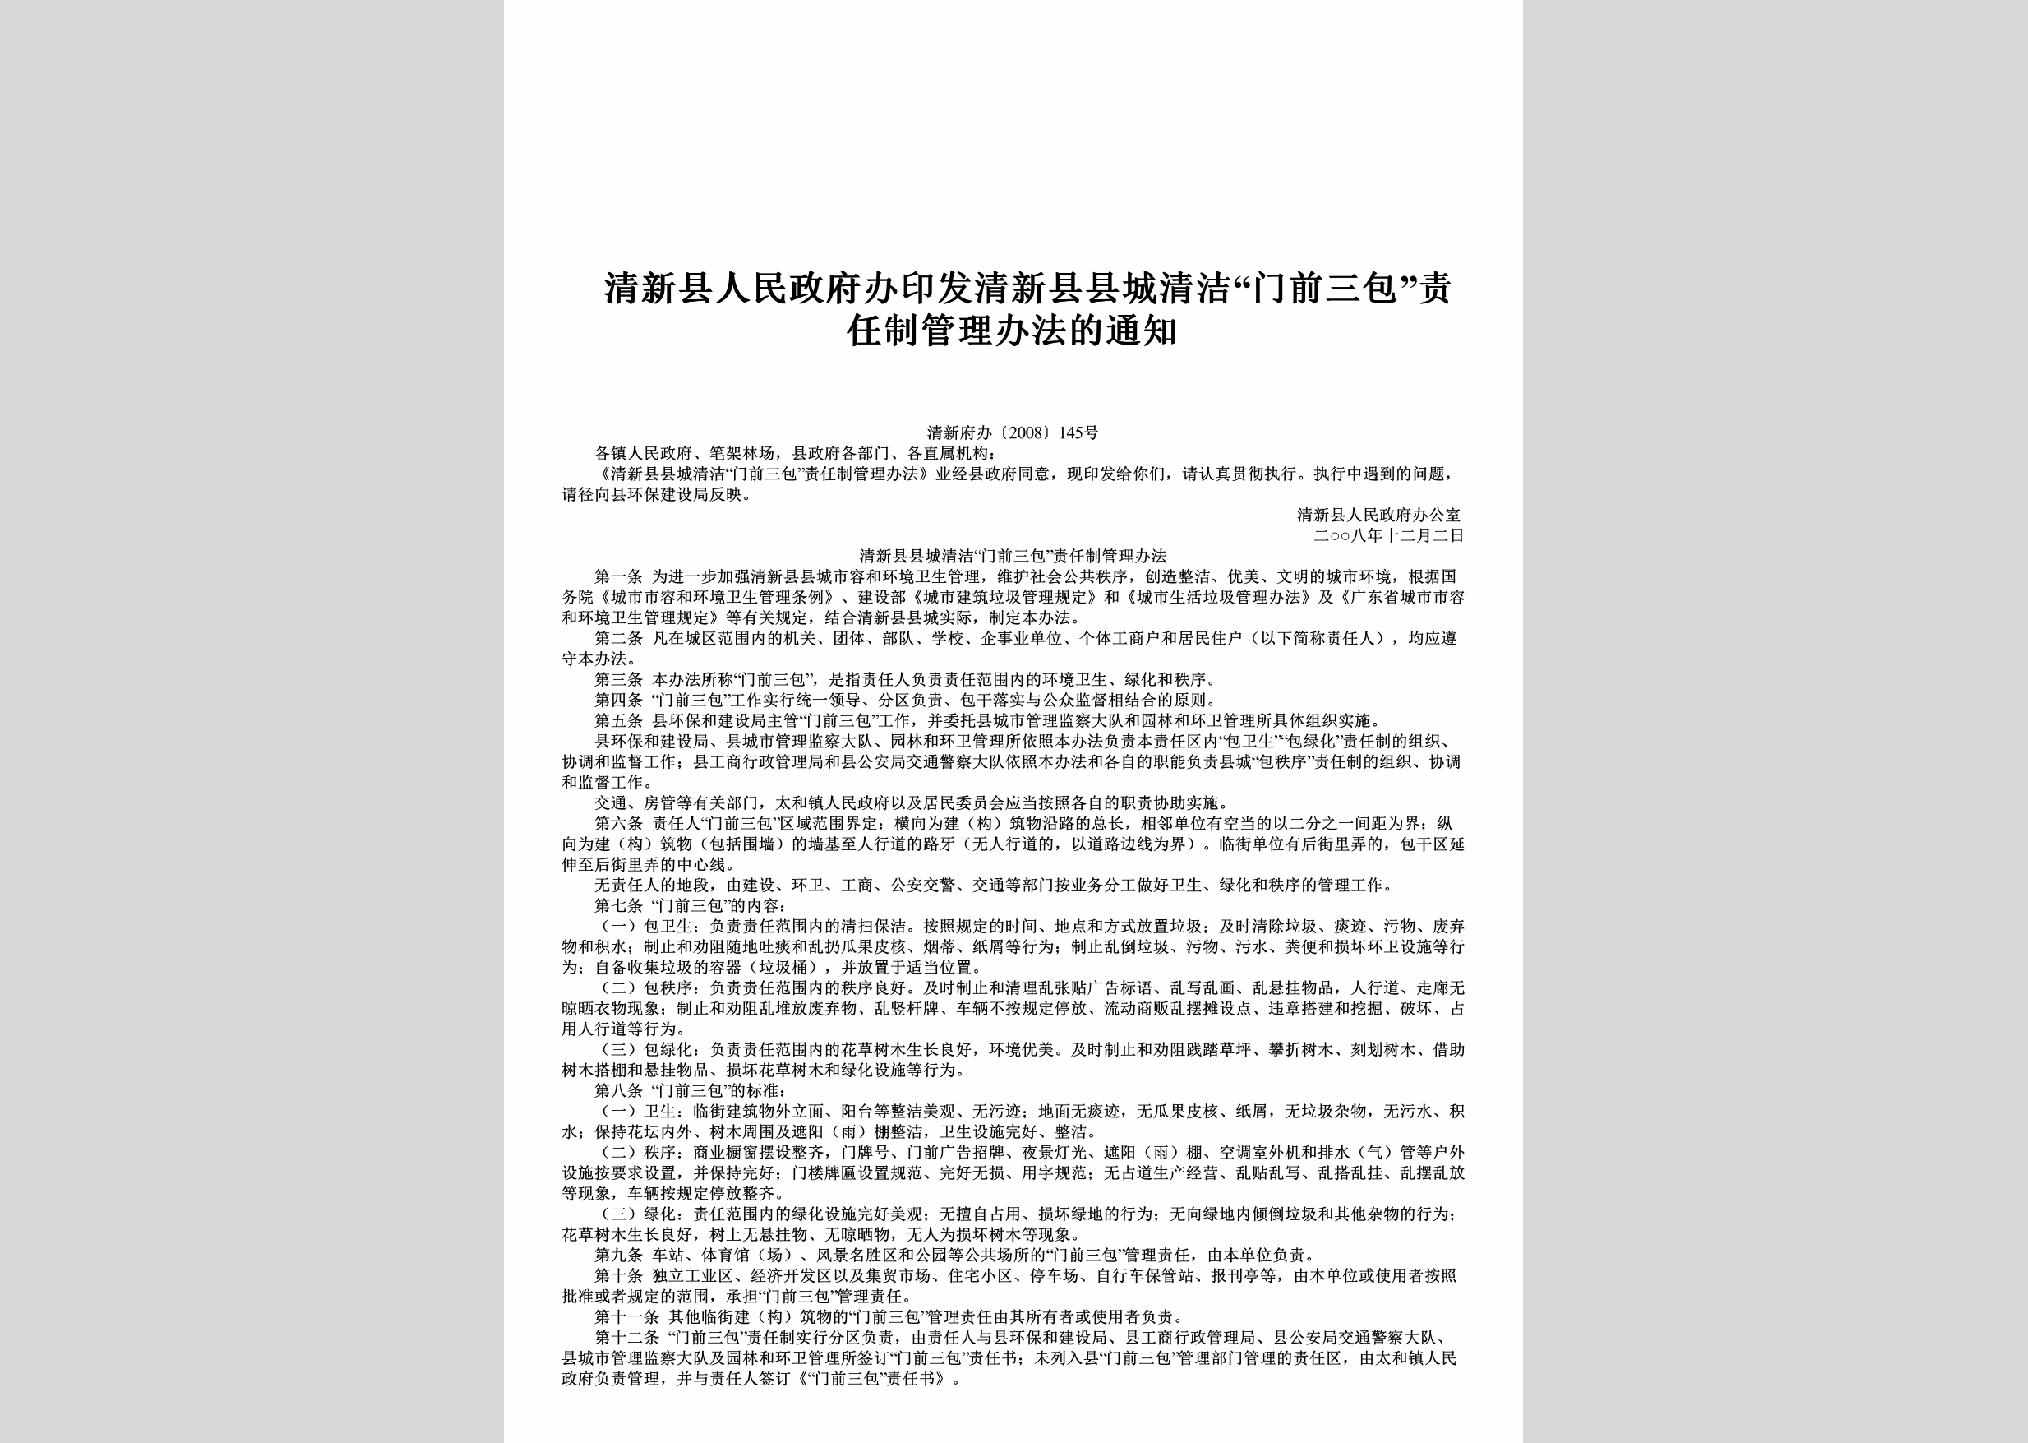 清新府办[2008]145号：印发清新县县城清洁“门前三包”责任制管理办法的通知